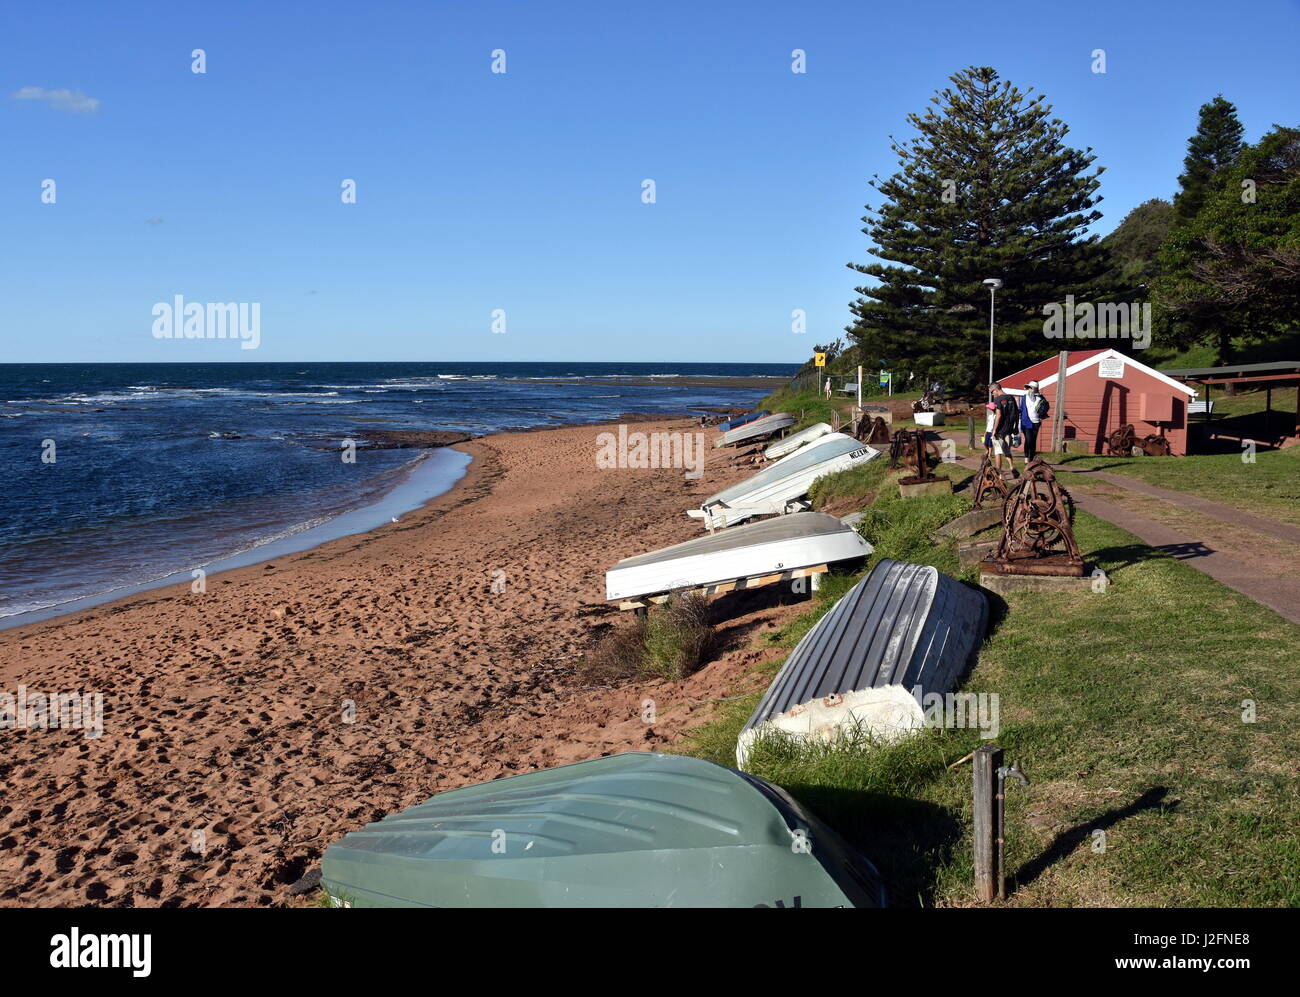 Collaroy, Australien - 9. April 2017. Angelboote/Fischerboote am Strand von Fishermans lange Riff Landzunge an einem sonnigen Nachmittag (Sydney, New South Wales, Australien). Stockfoto